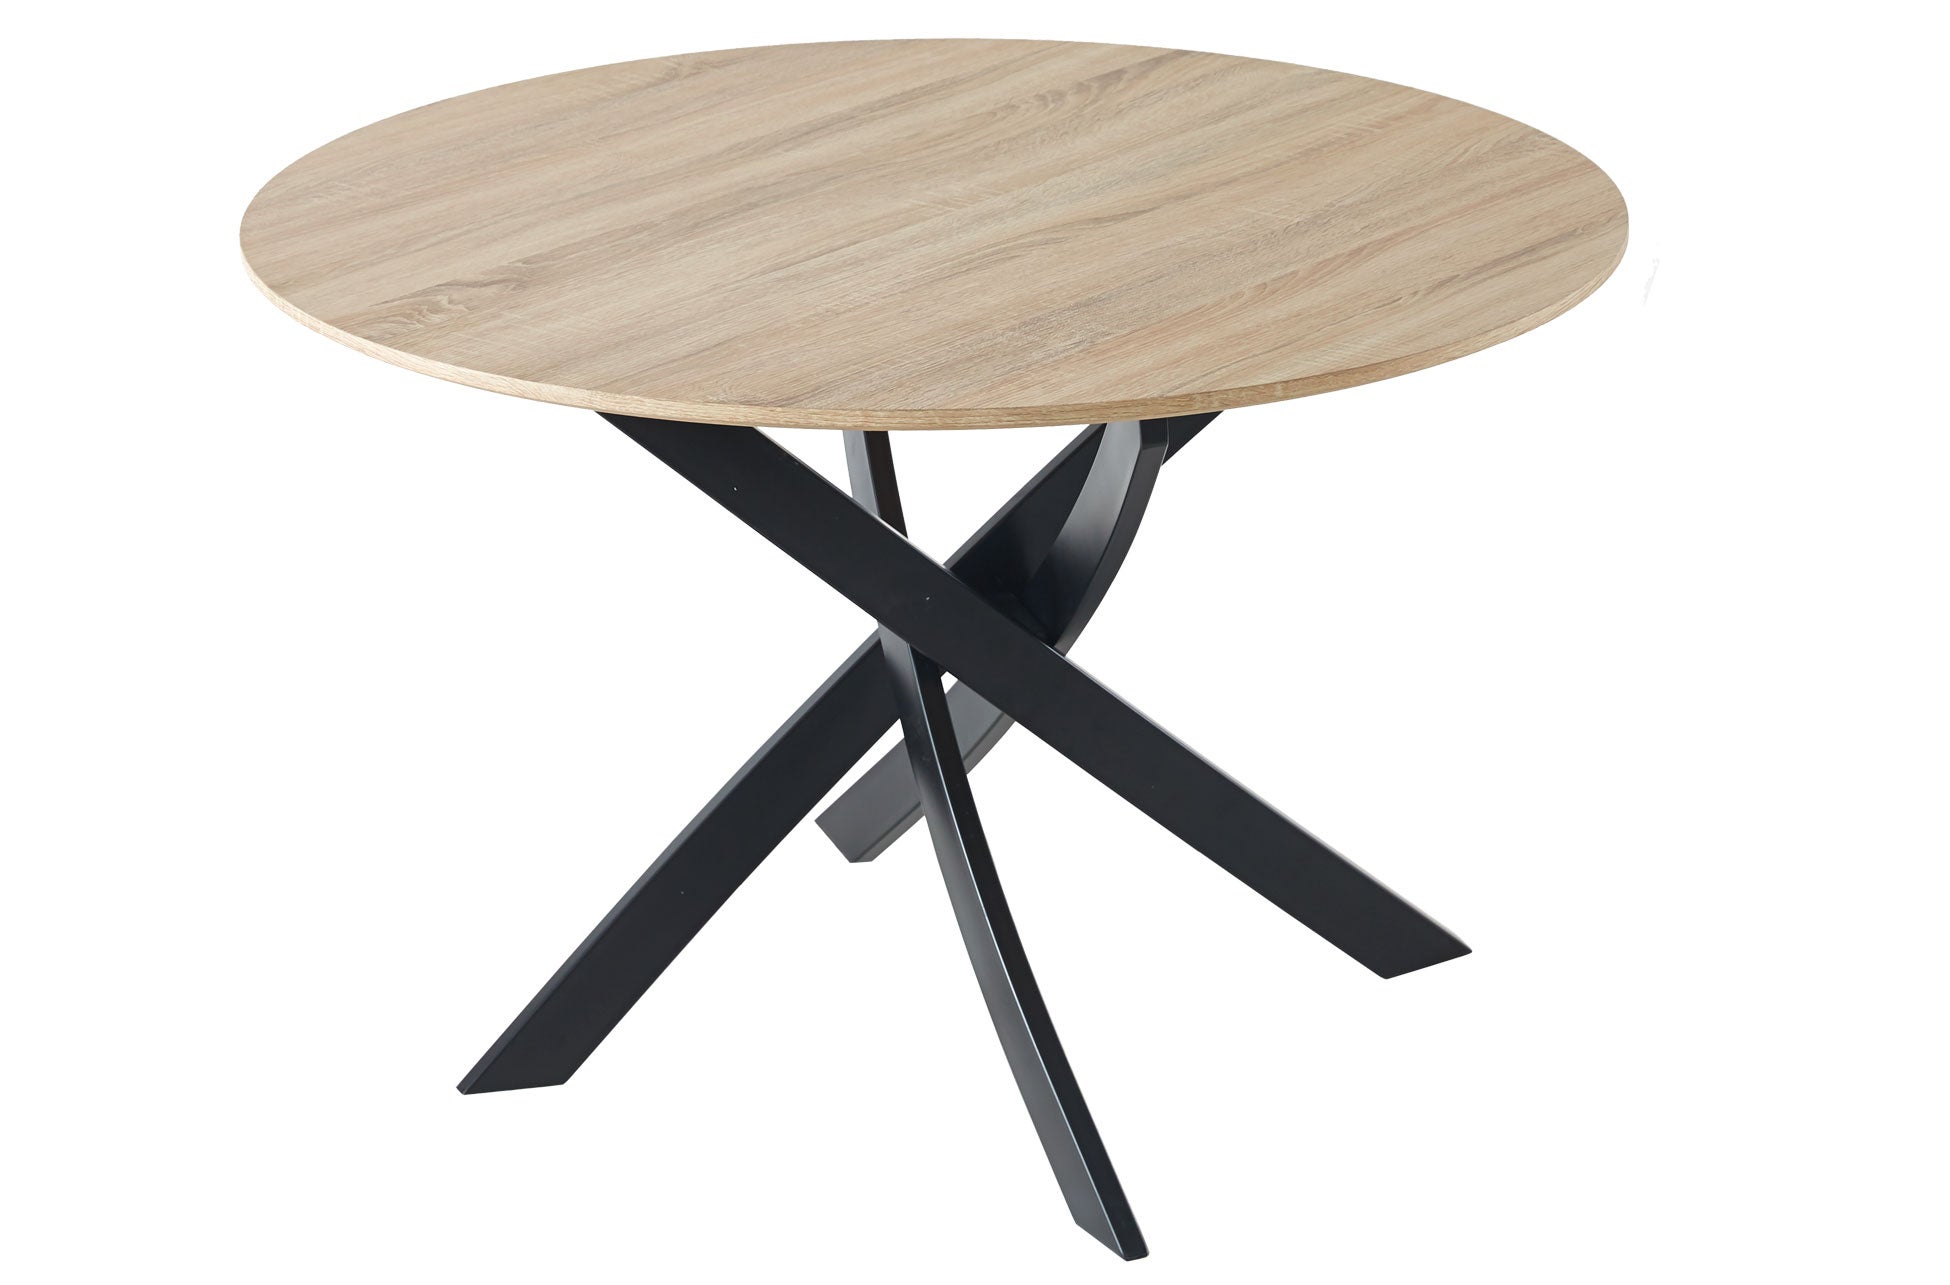 Table à manger ronde fixe, salon, Modèle ZEN, couleur chêne, Pieds métalliques, mesure 100x100x75cm de haut.